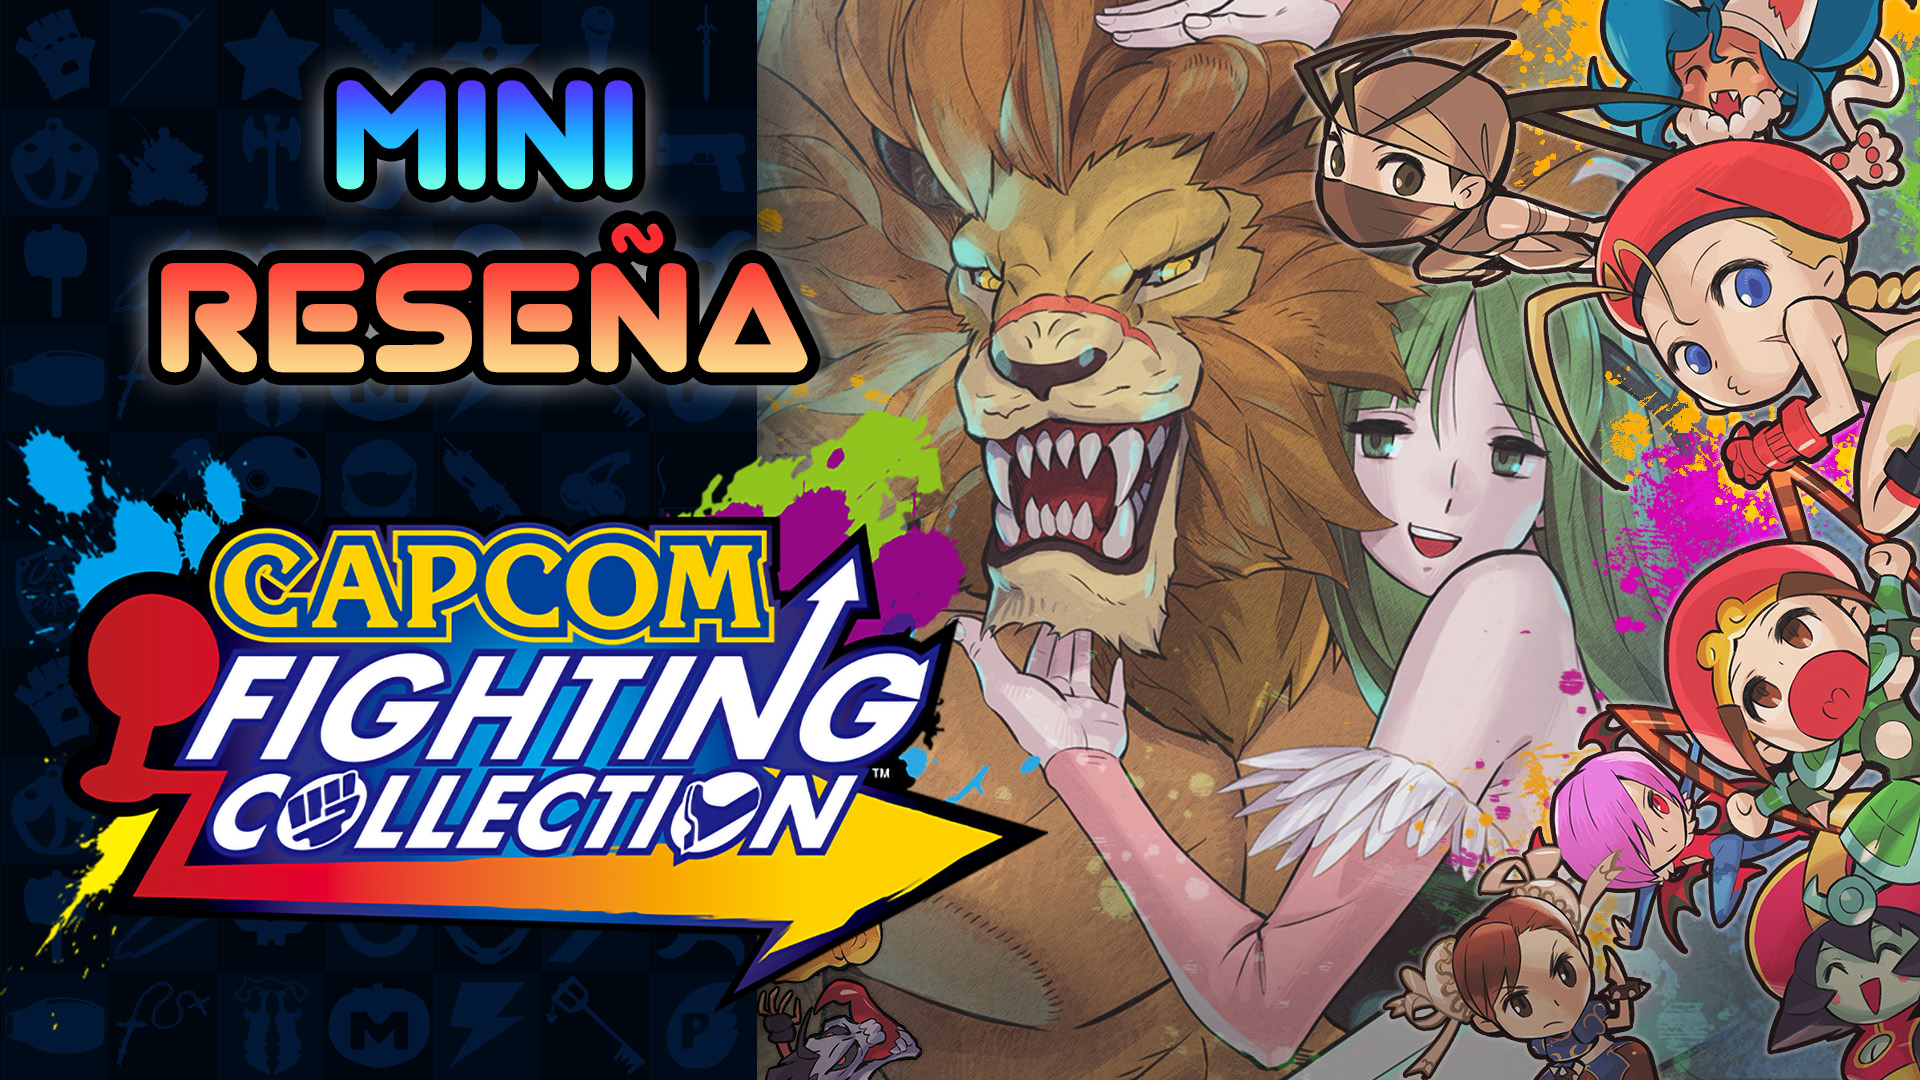 Mini Reseña Capcom Fighting Collection – ¡Los Darkstalkers y sus amigos!